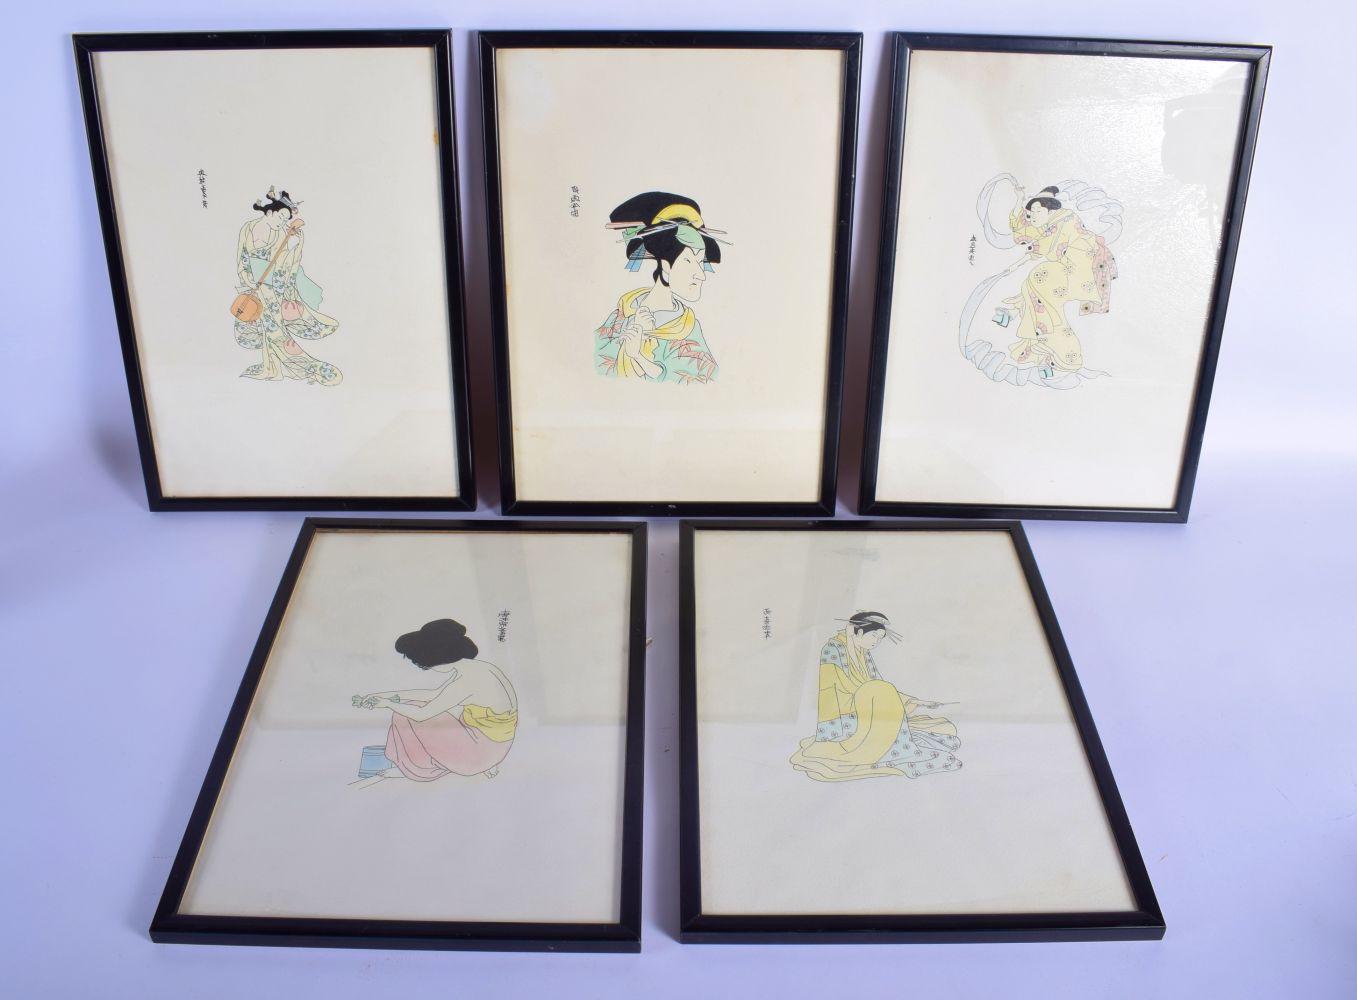 Japanese School (C1930) 10 x Watercolours, Figures in various pursuits. Image 35 cm x 26 cm. (10)